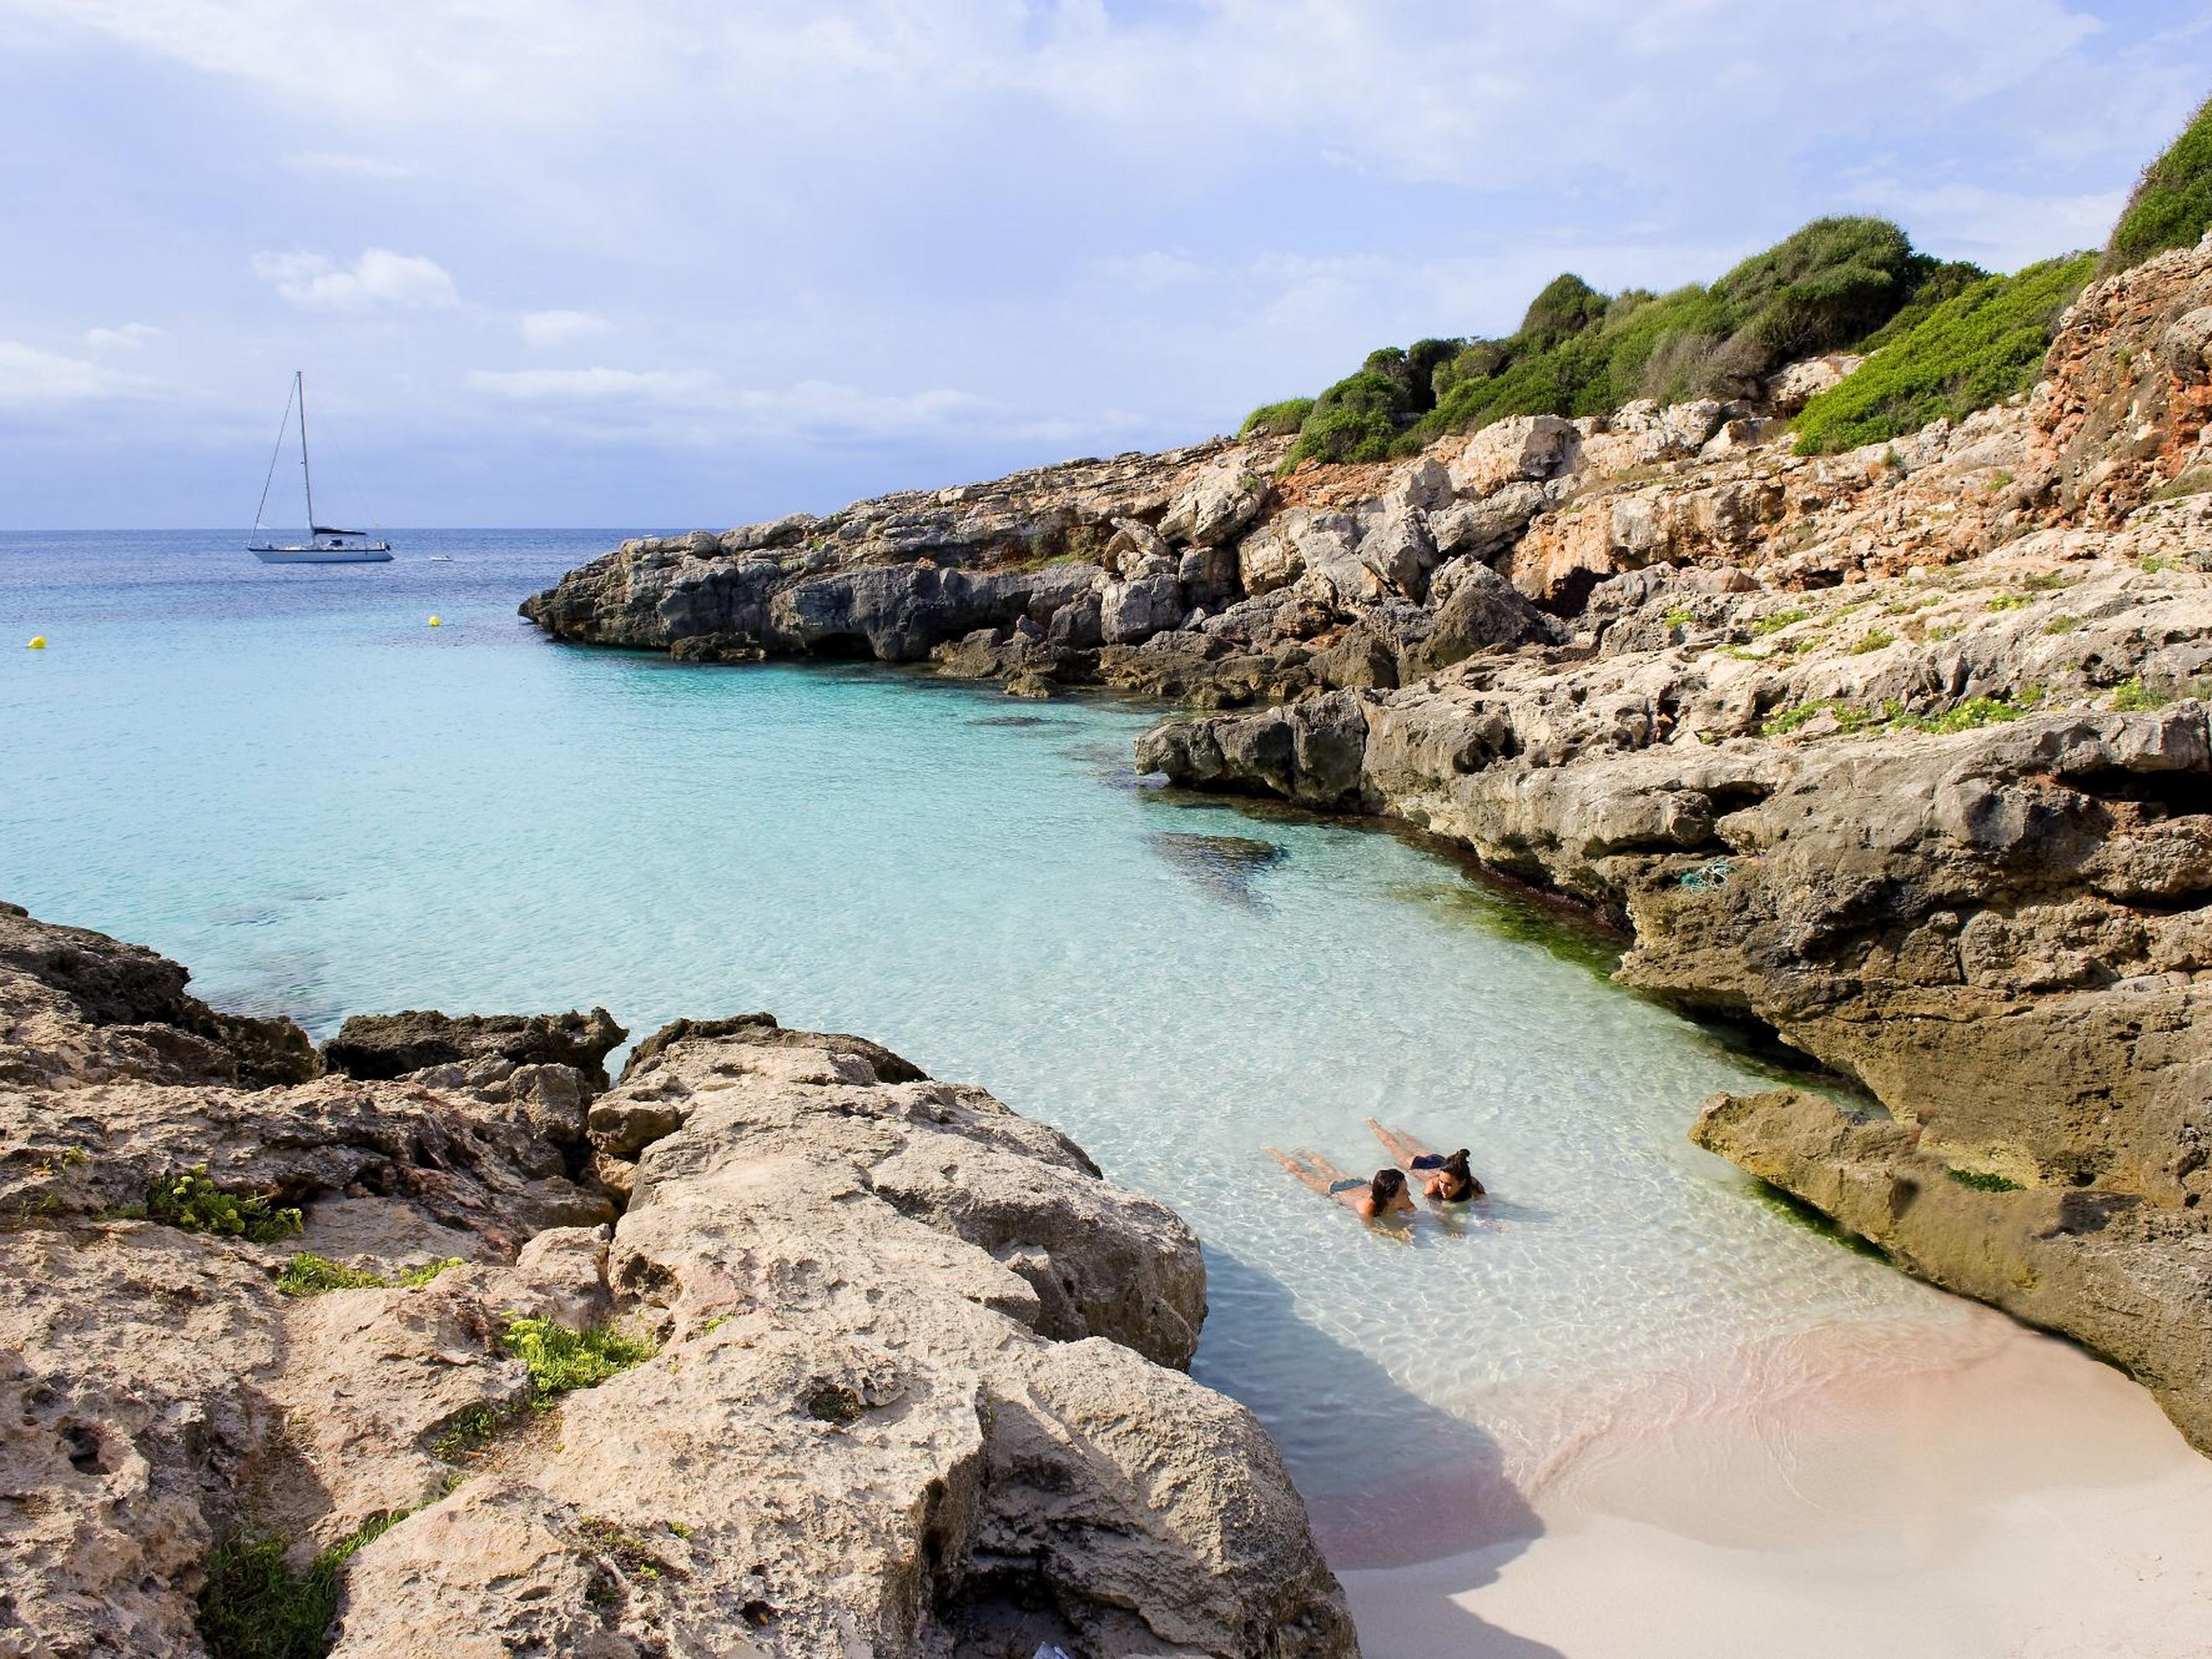 Playas norte in Menorca